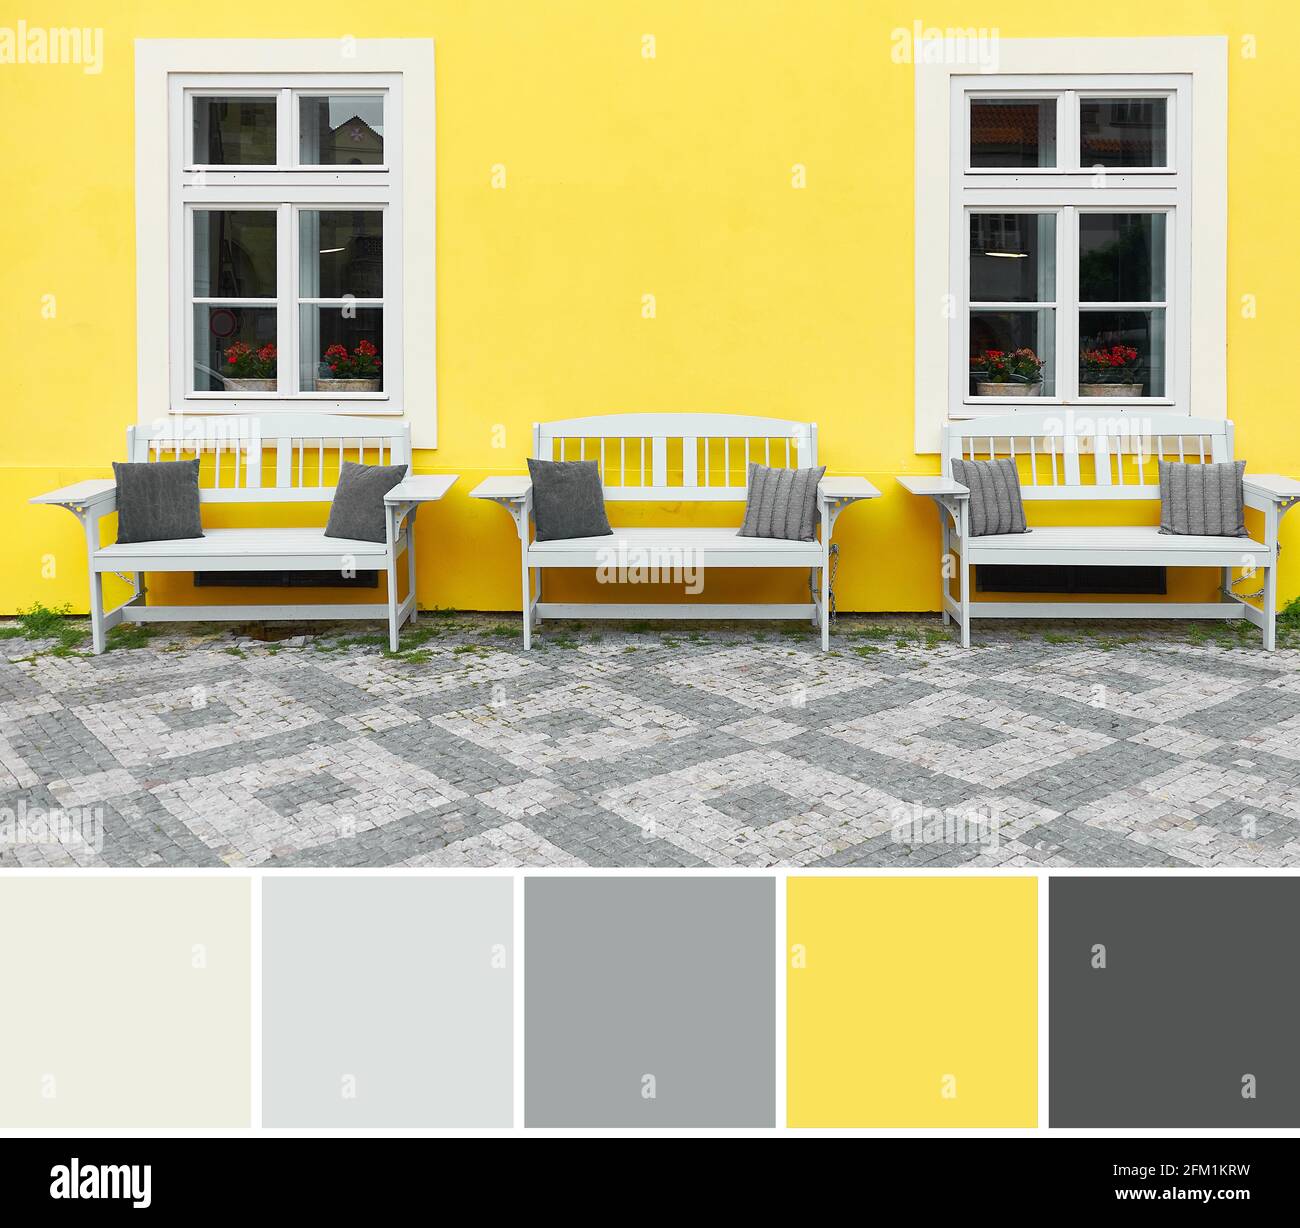 Tavolozza dei colori dell'immagine di viaggio di Praga. Illuminante casa dipinta di giallo con facciata classica e tre panchine di legno bianco. Colore di Foto Stock